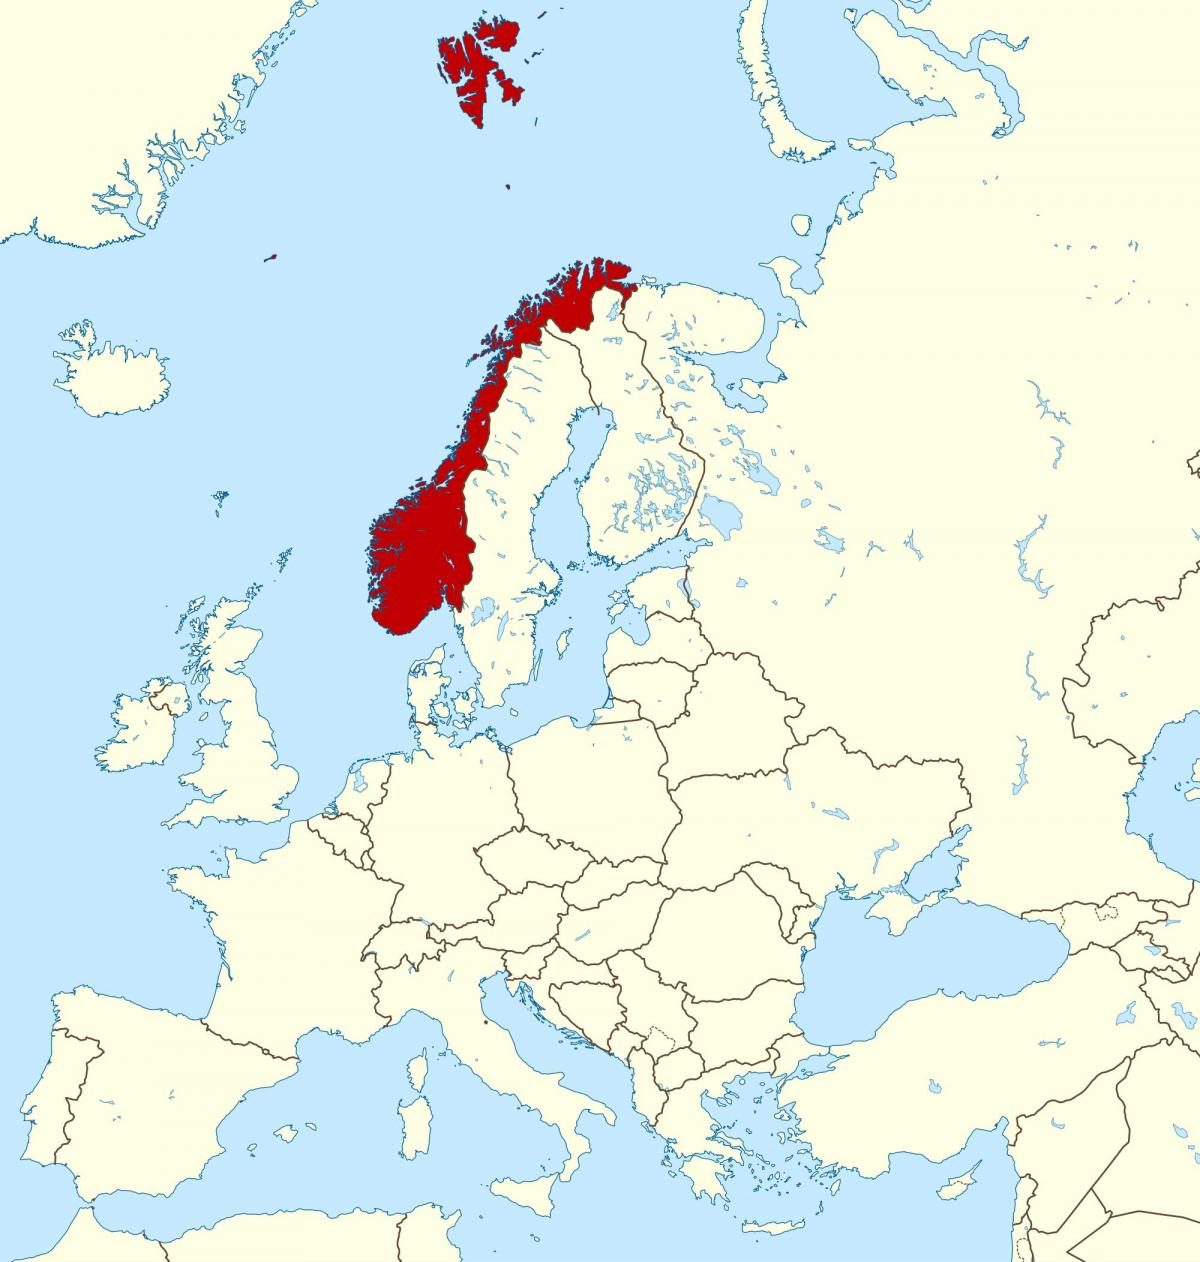 地图上挪威和欧洲